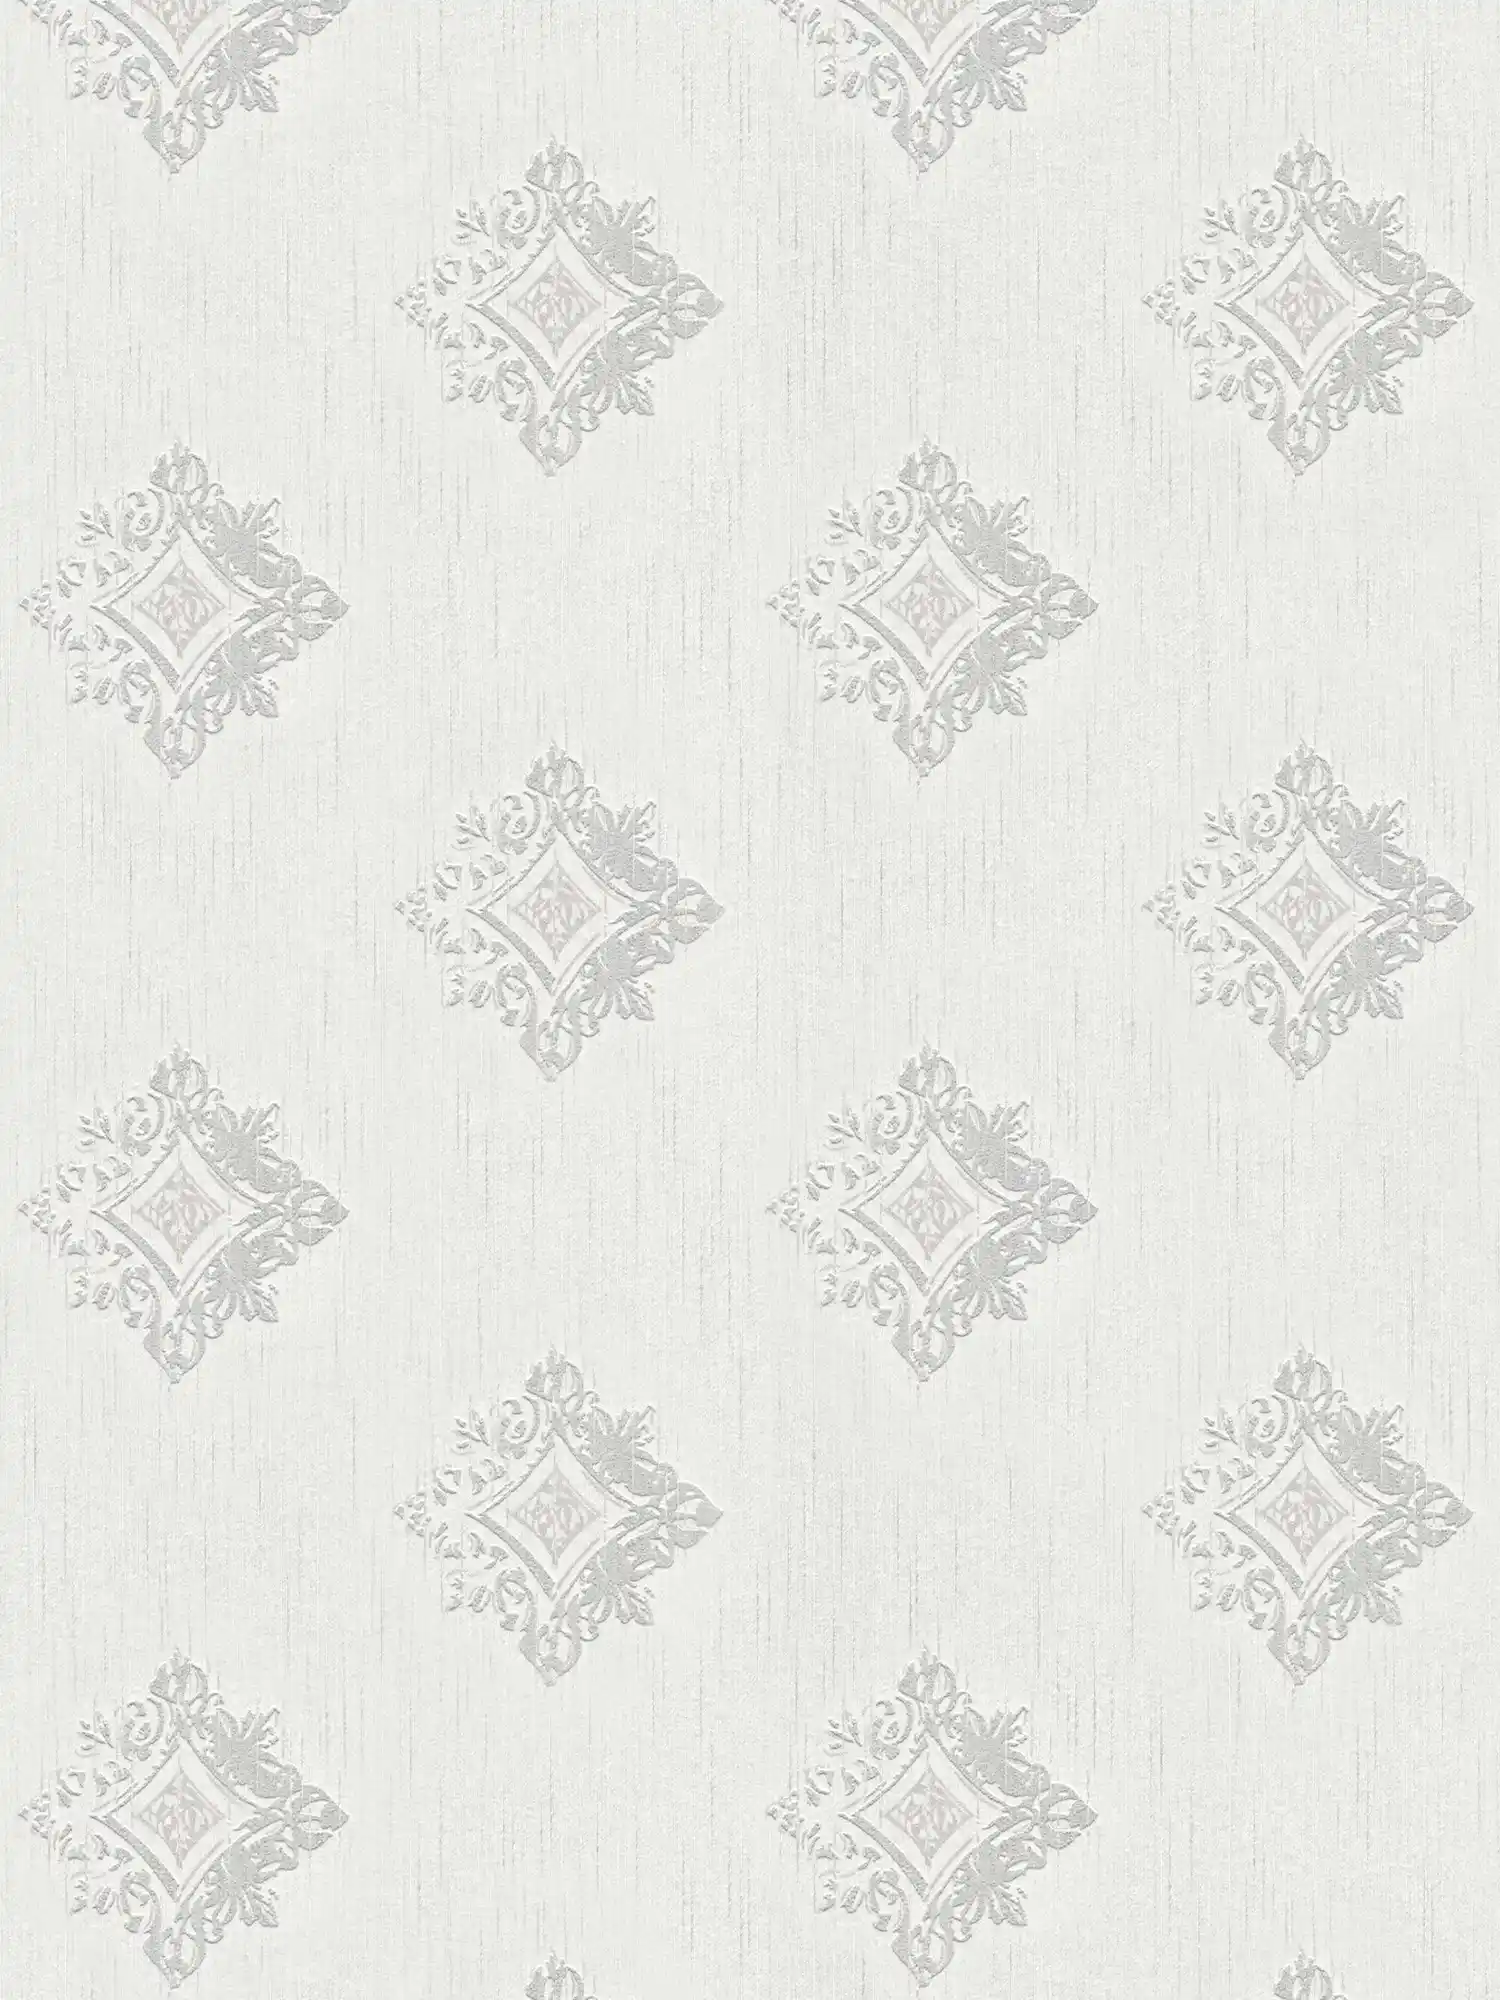         Papel pintado no tejido con aspecto de yeso con adornos de estuco y diseño de rombos - gris, blanco
    